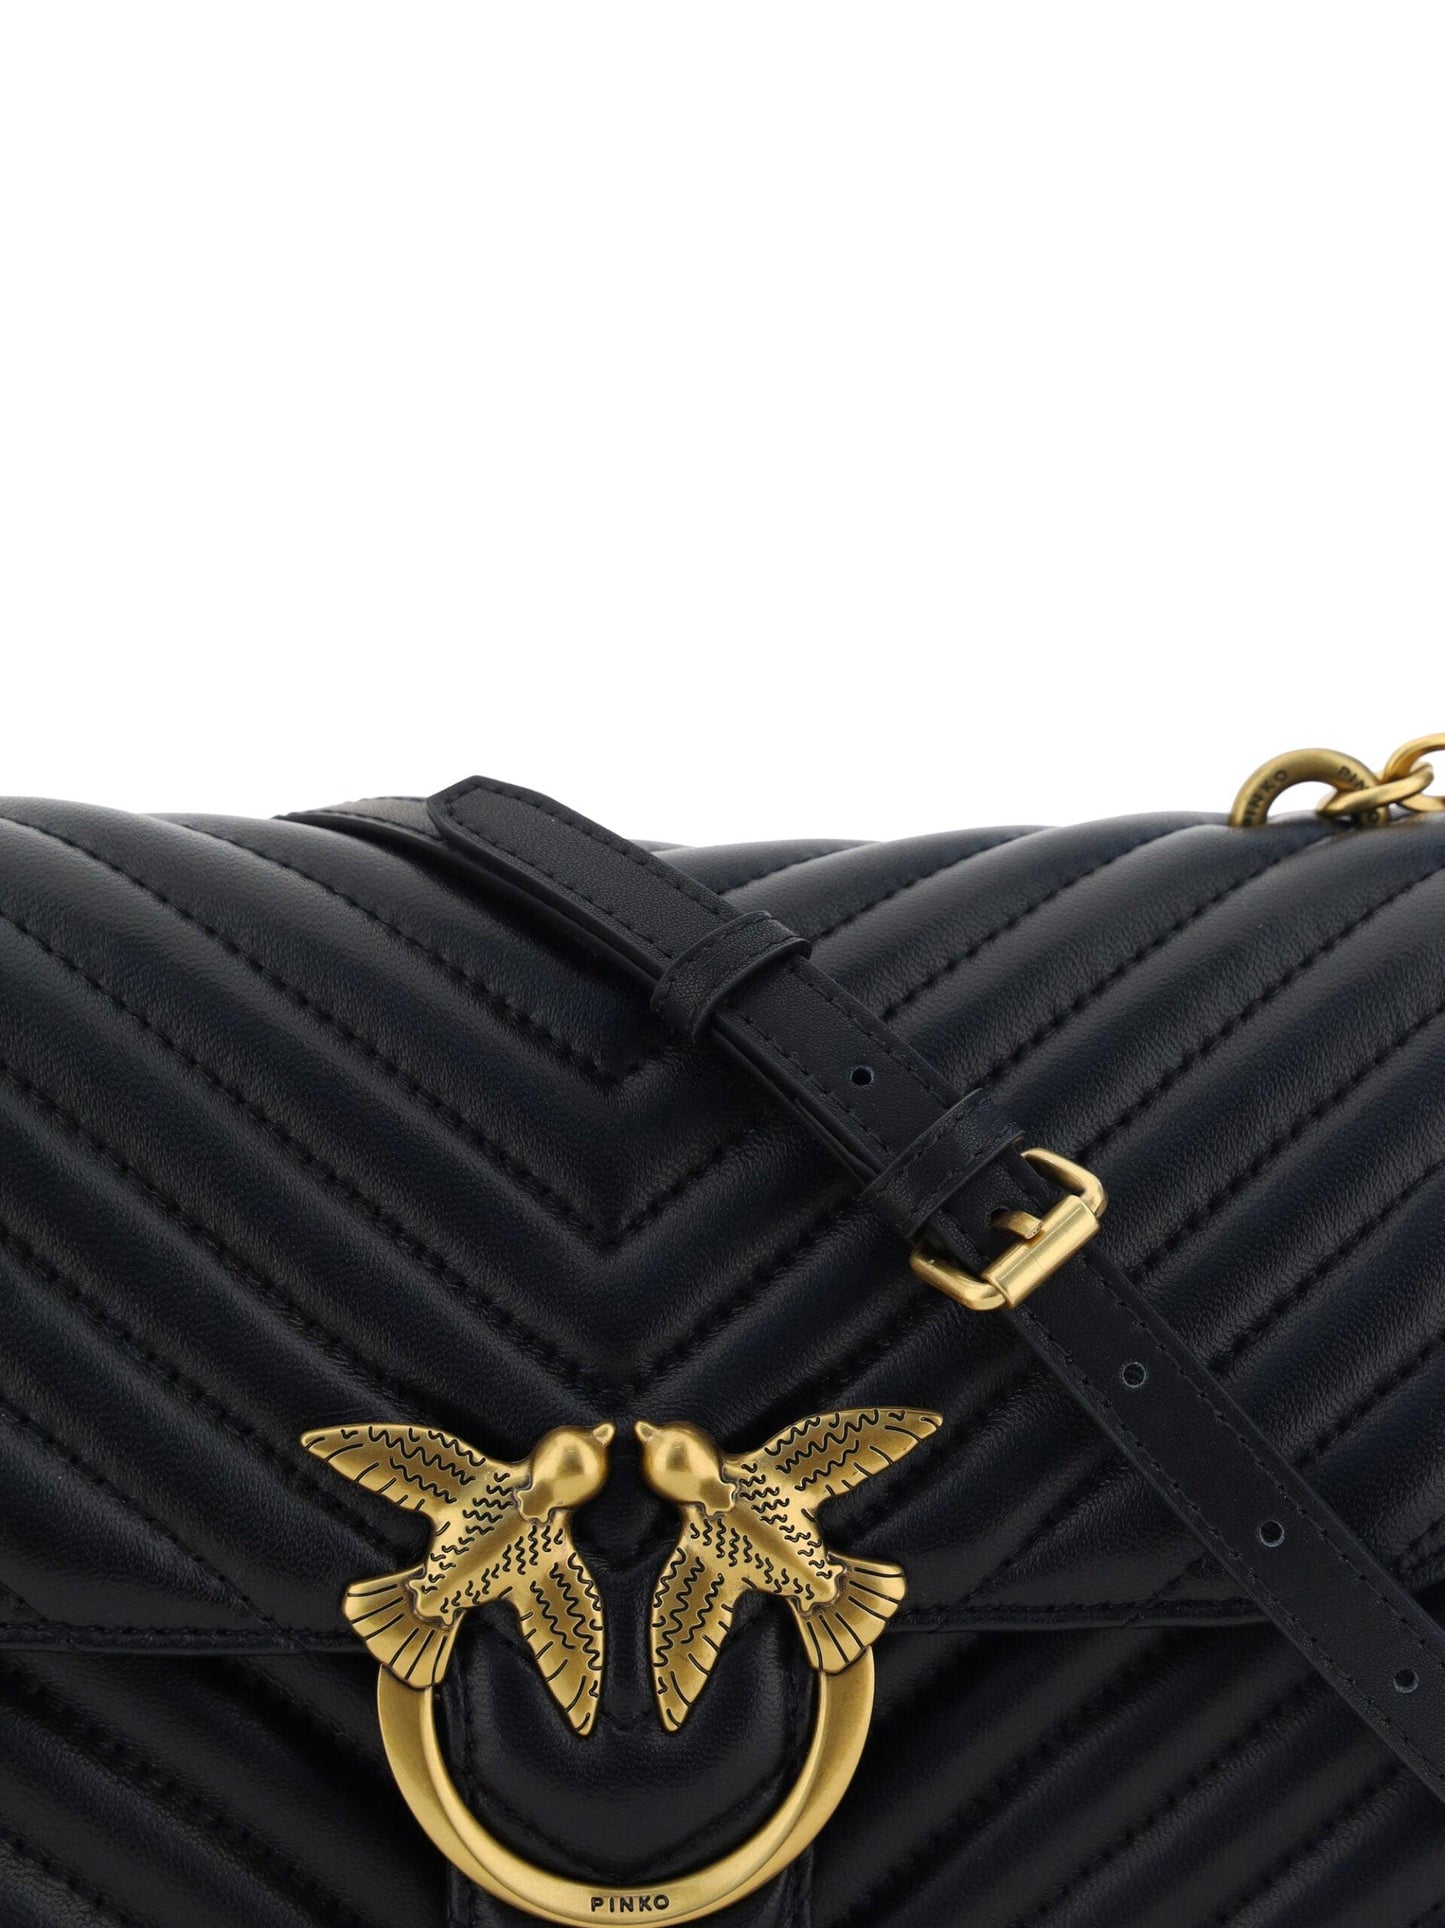 PINKO Elegant Black Quilted Leather Shoulder Bag - PER.FASHION